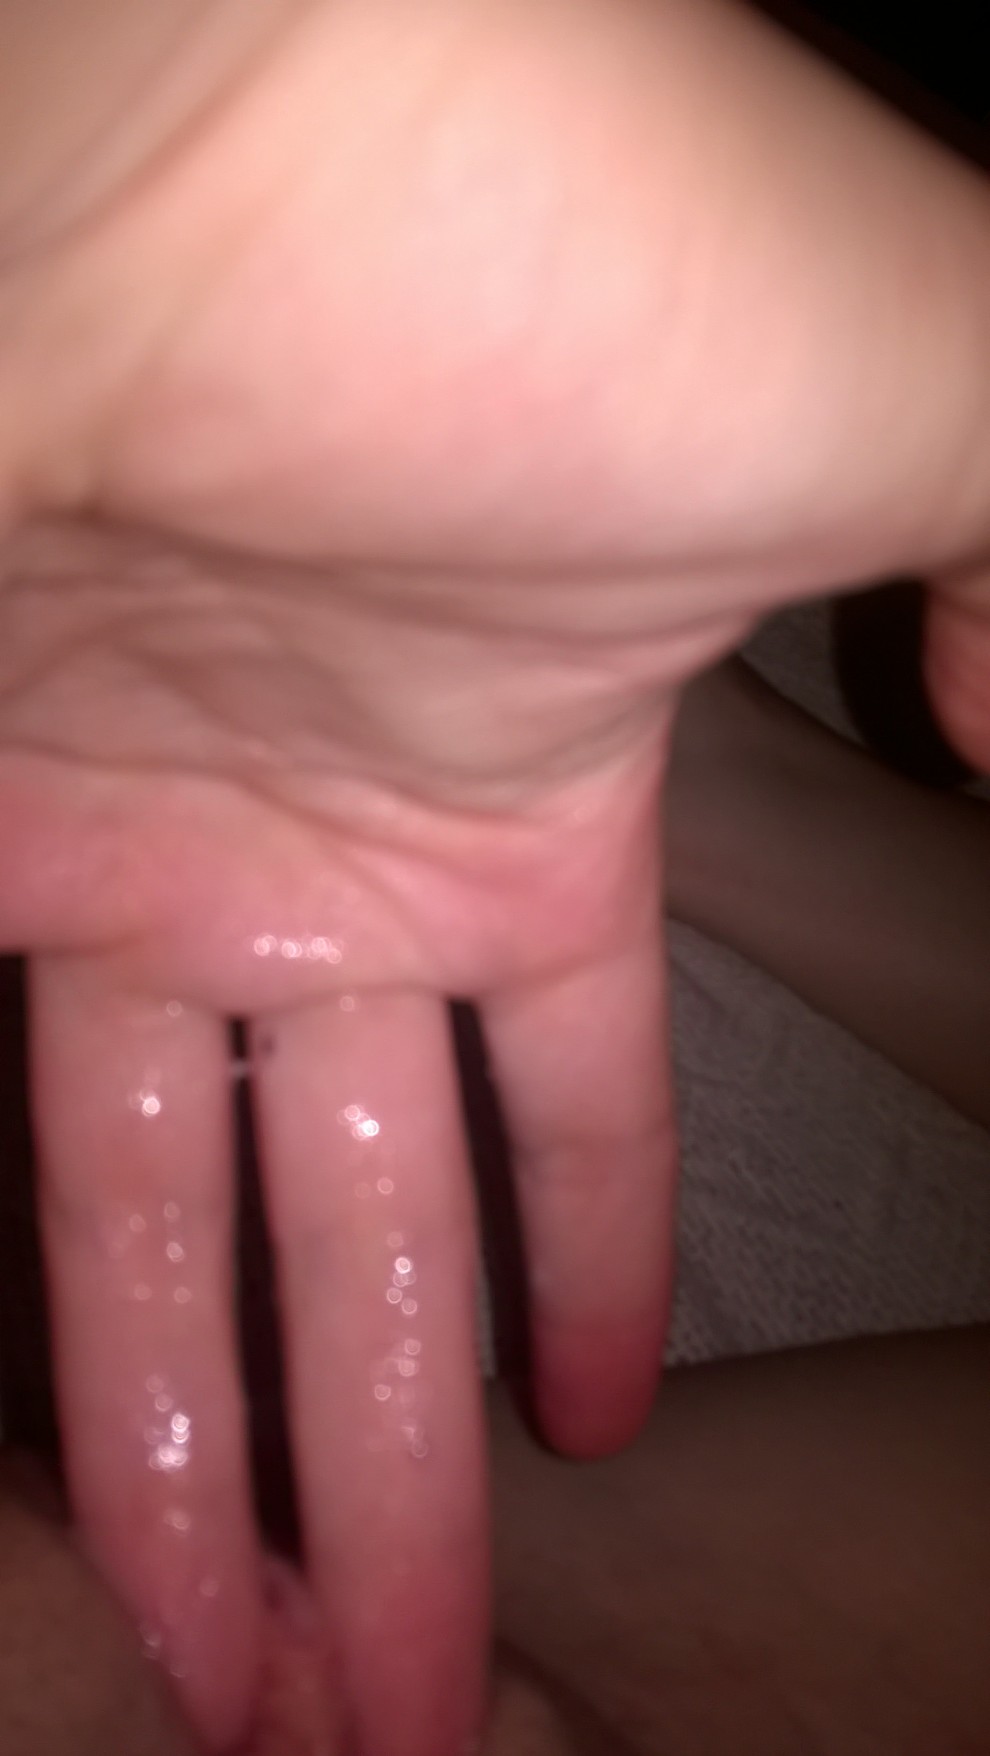 Sticky Fingers Porn